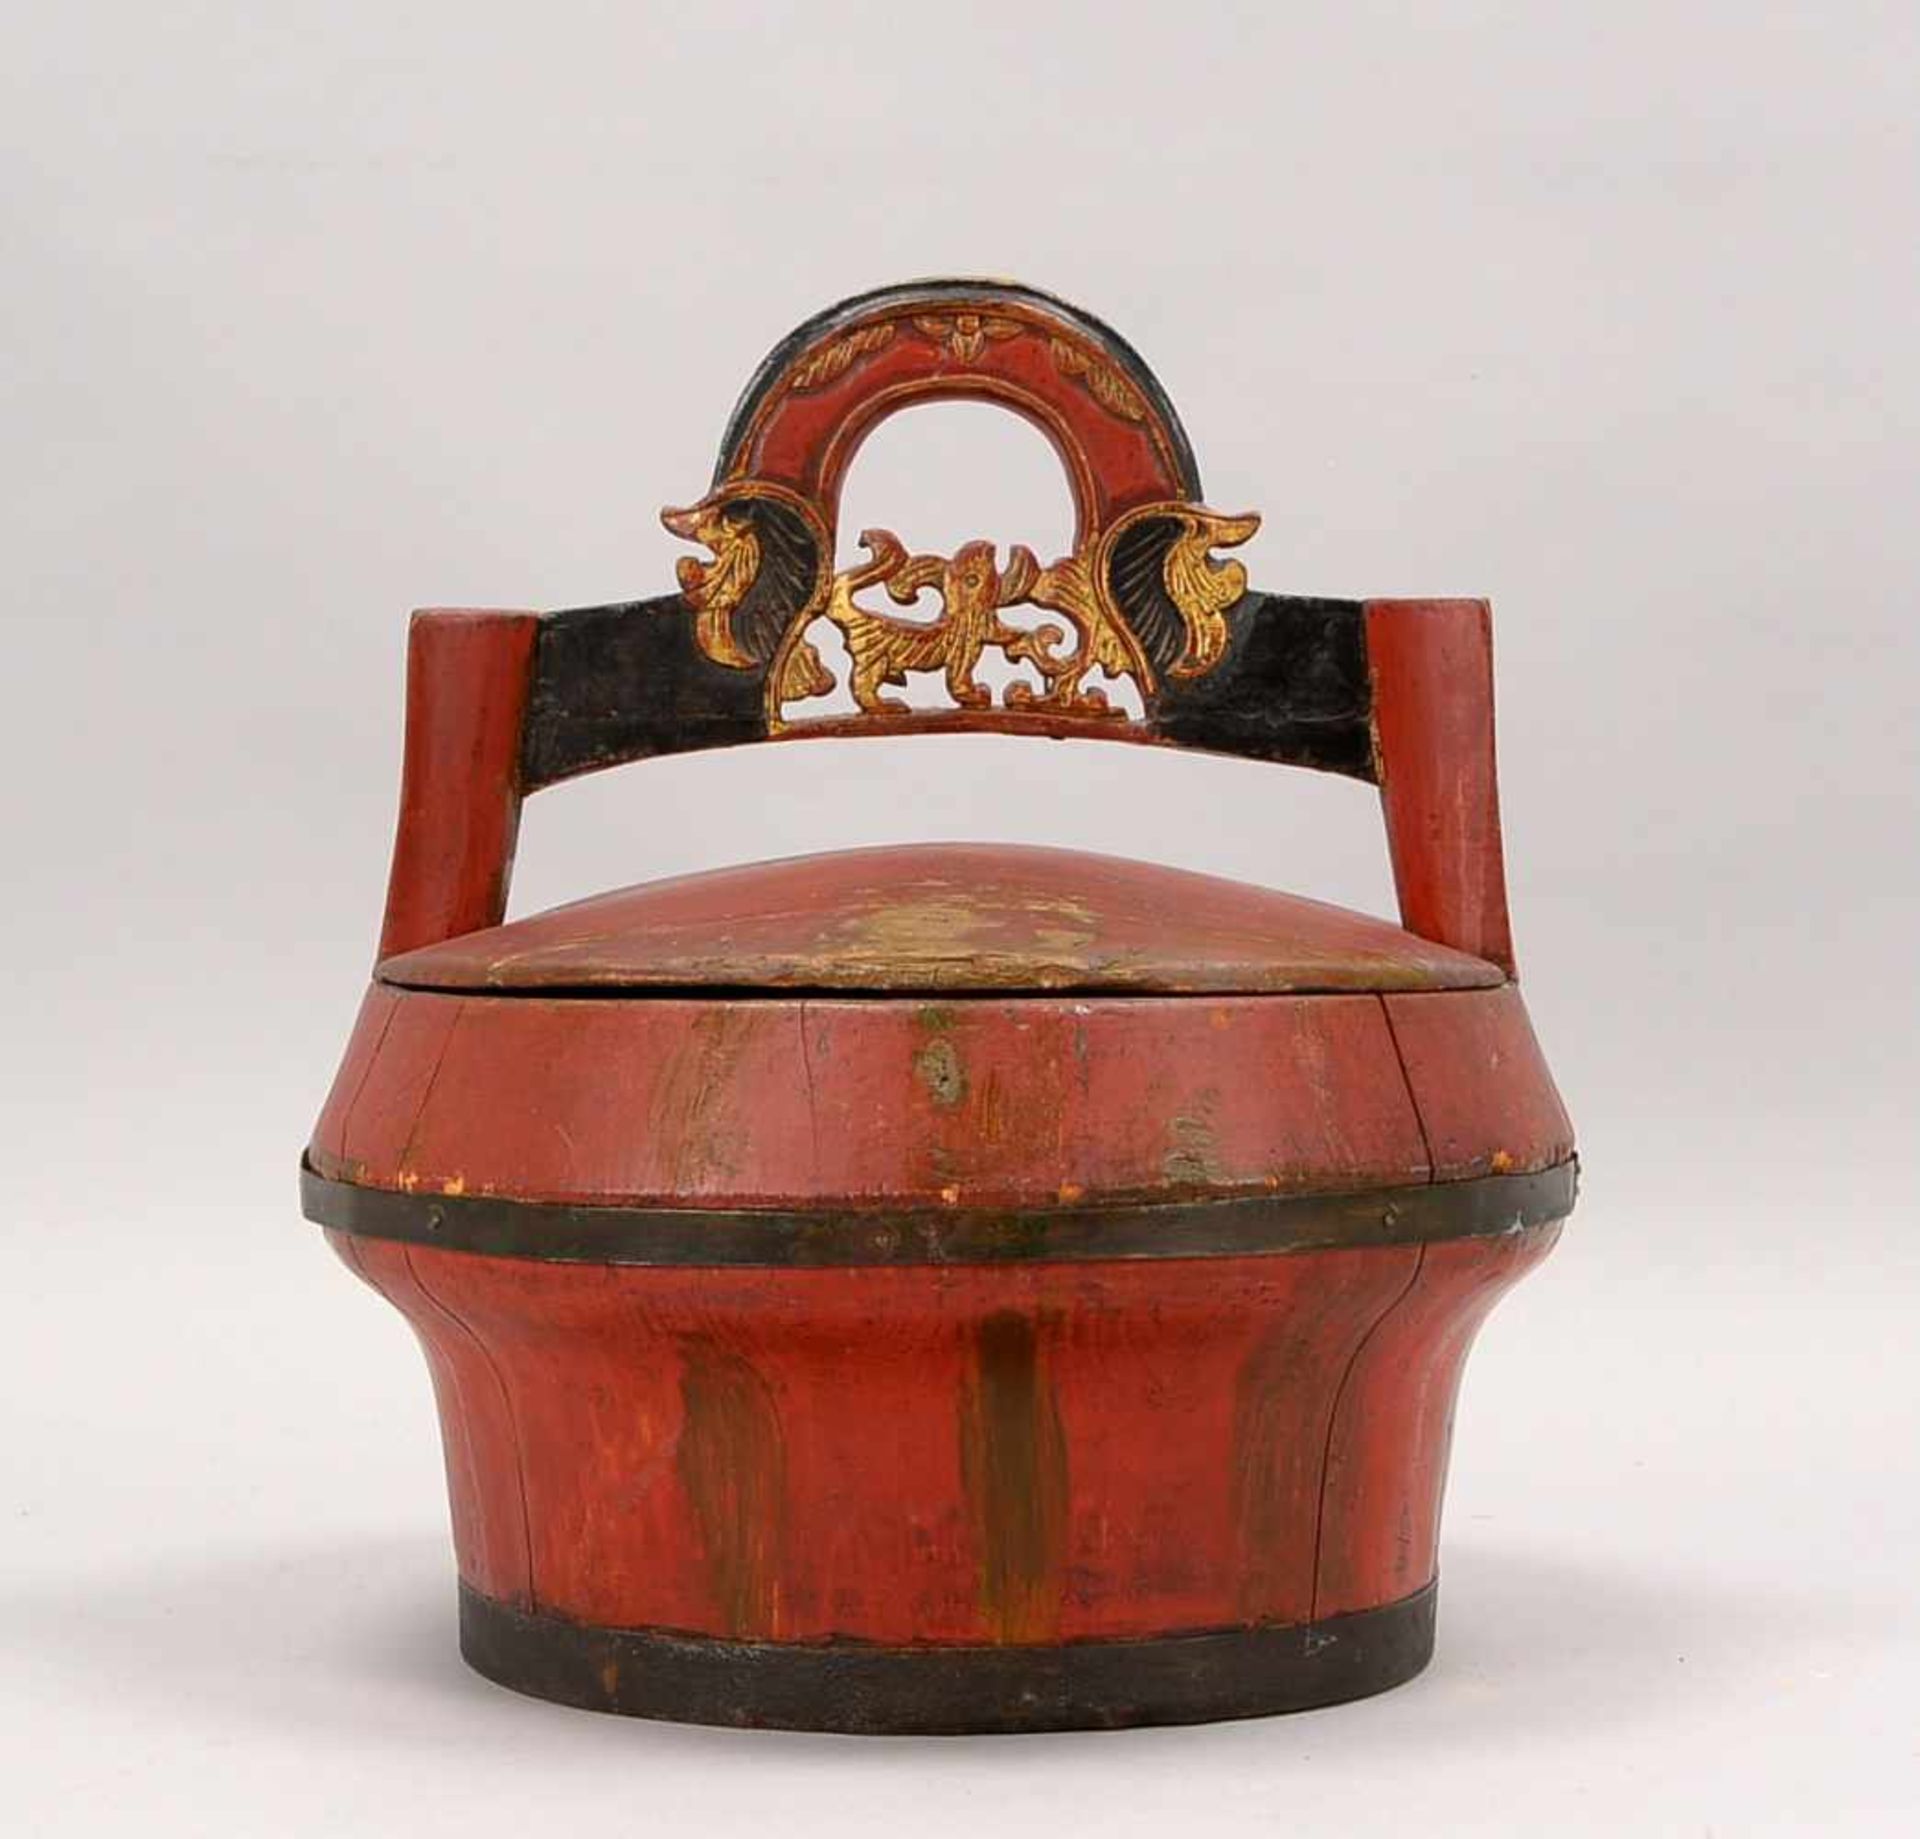 Reisbehälter, China, Holz mit Rotlack, mit Tragegriff/teilweise geschnitzt; Höhe 33 cm,